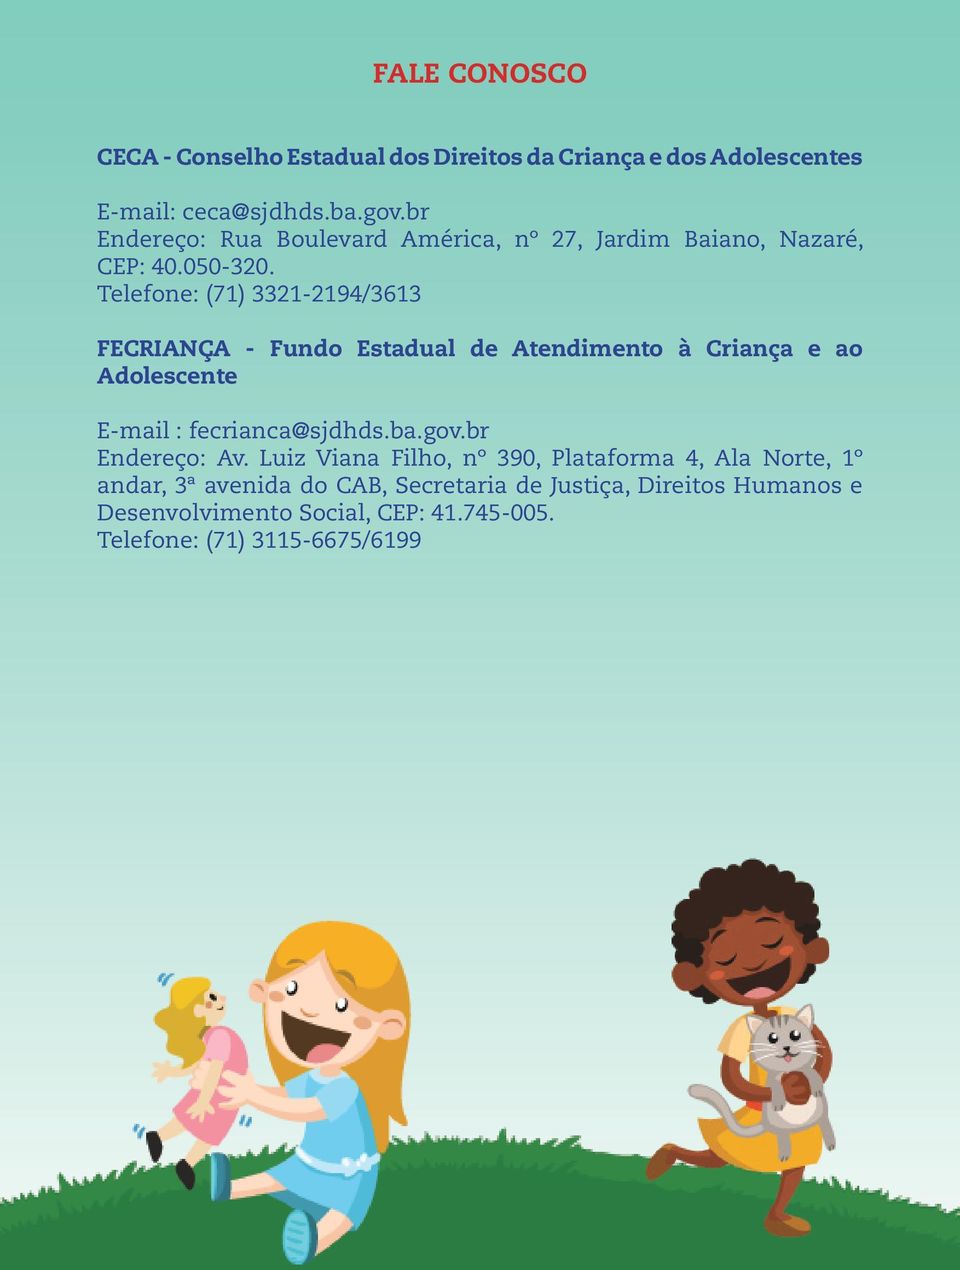 Telefone: (71) 3321-2194/3613 FECRIANÇA - Fundo Estadual de Atendimento à Criança e ao Adolescente E-mail : fecrianca@sjdhds.ba.gov.